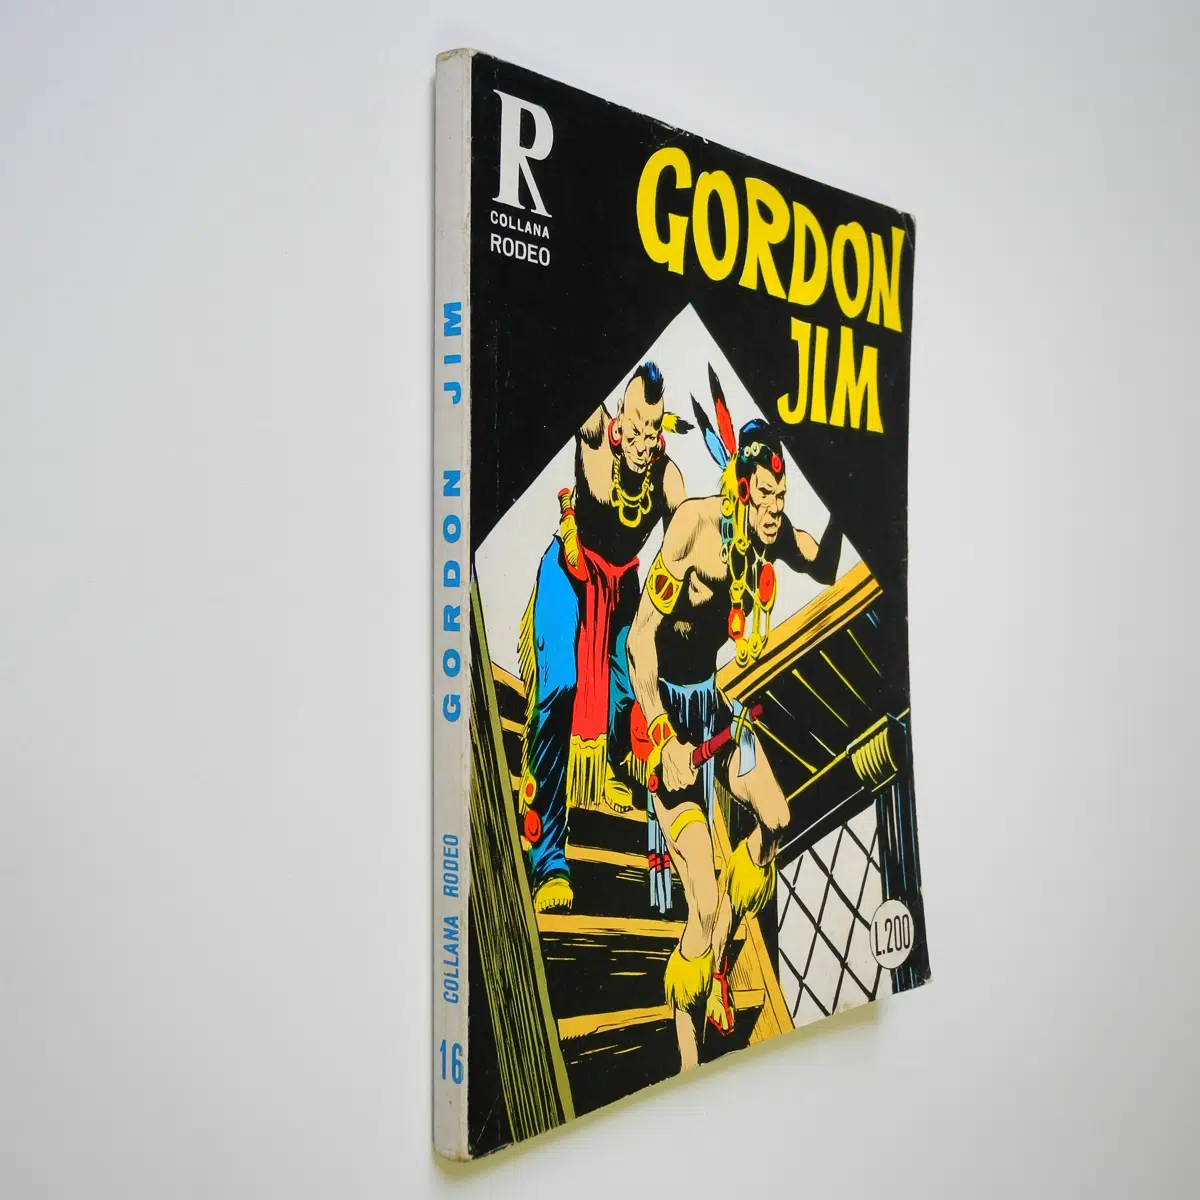 Fumetto della Collana Rodeo 16 originale Araldo del 1968 Gordon Jim